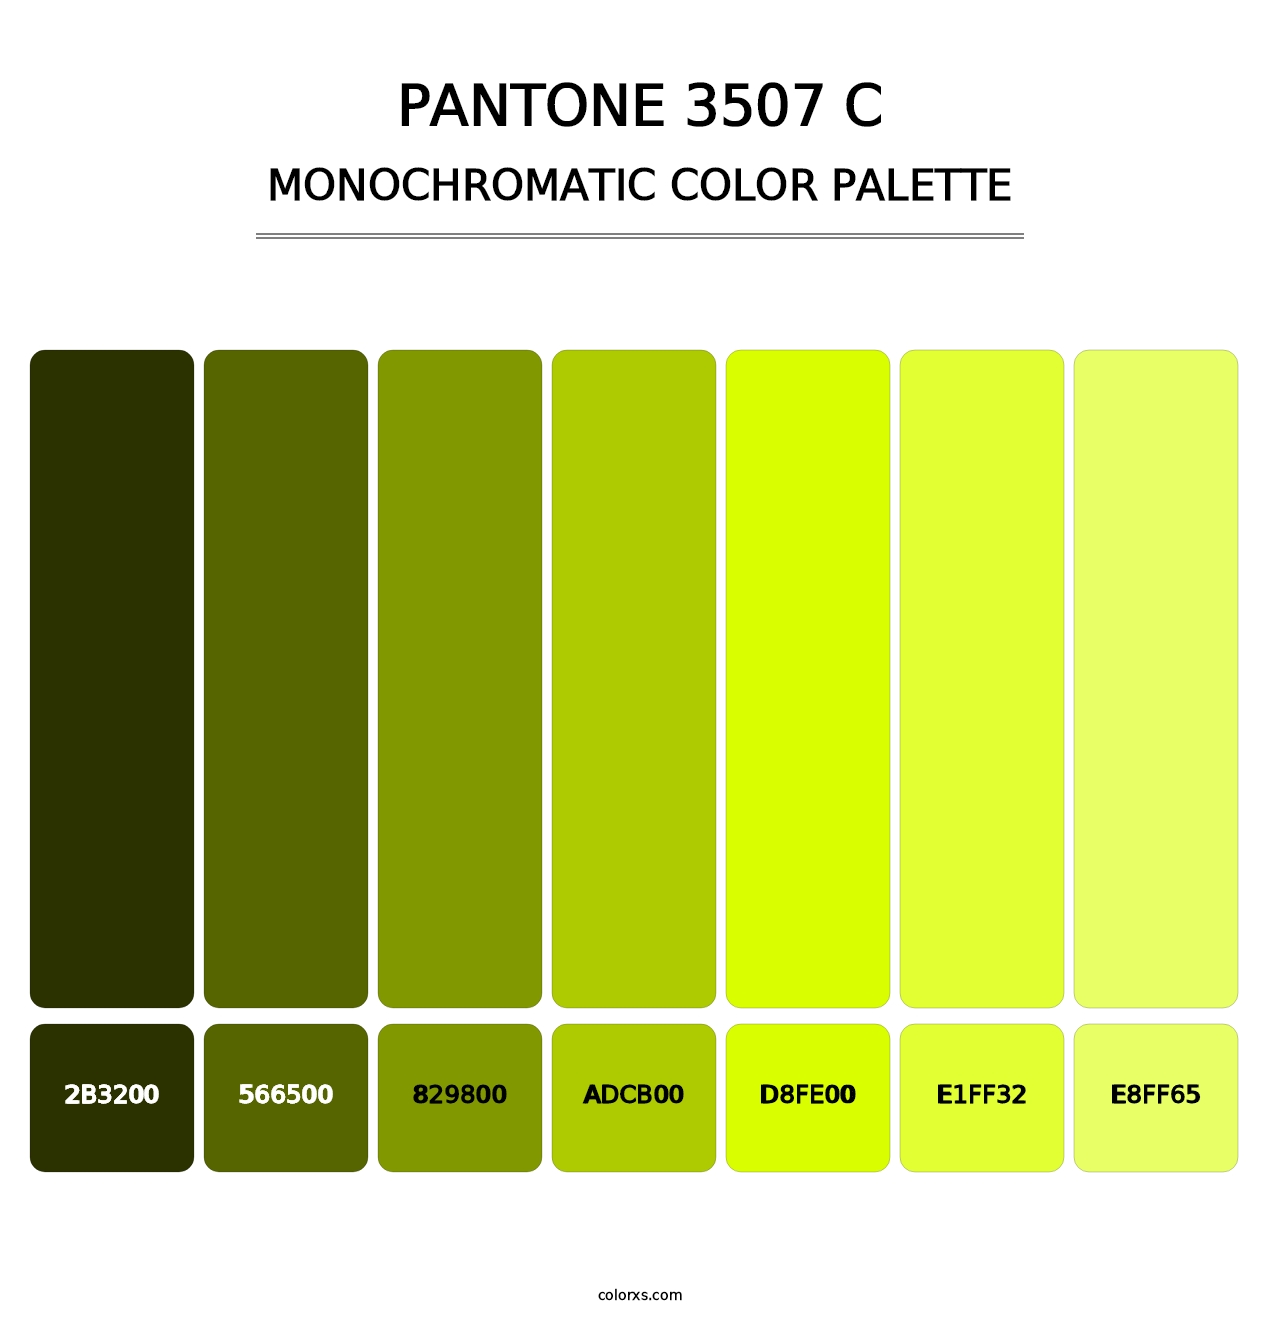 PANTONE 3507 C - Monochromatic Color Palette